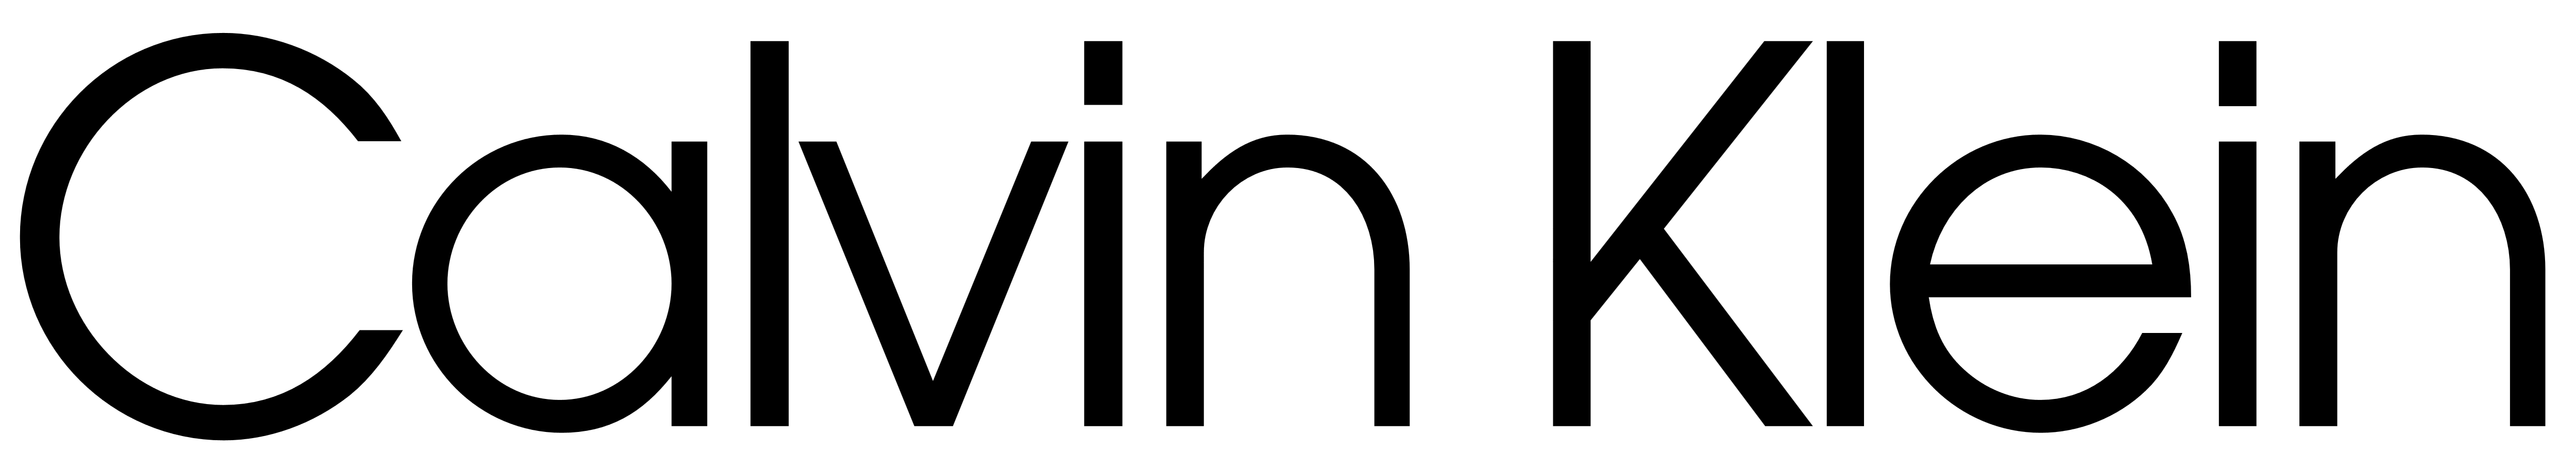 CALVIN KLEIN logo PNG Imagen de alta calidad